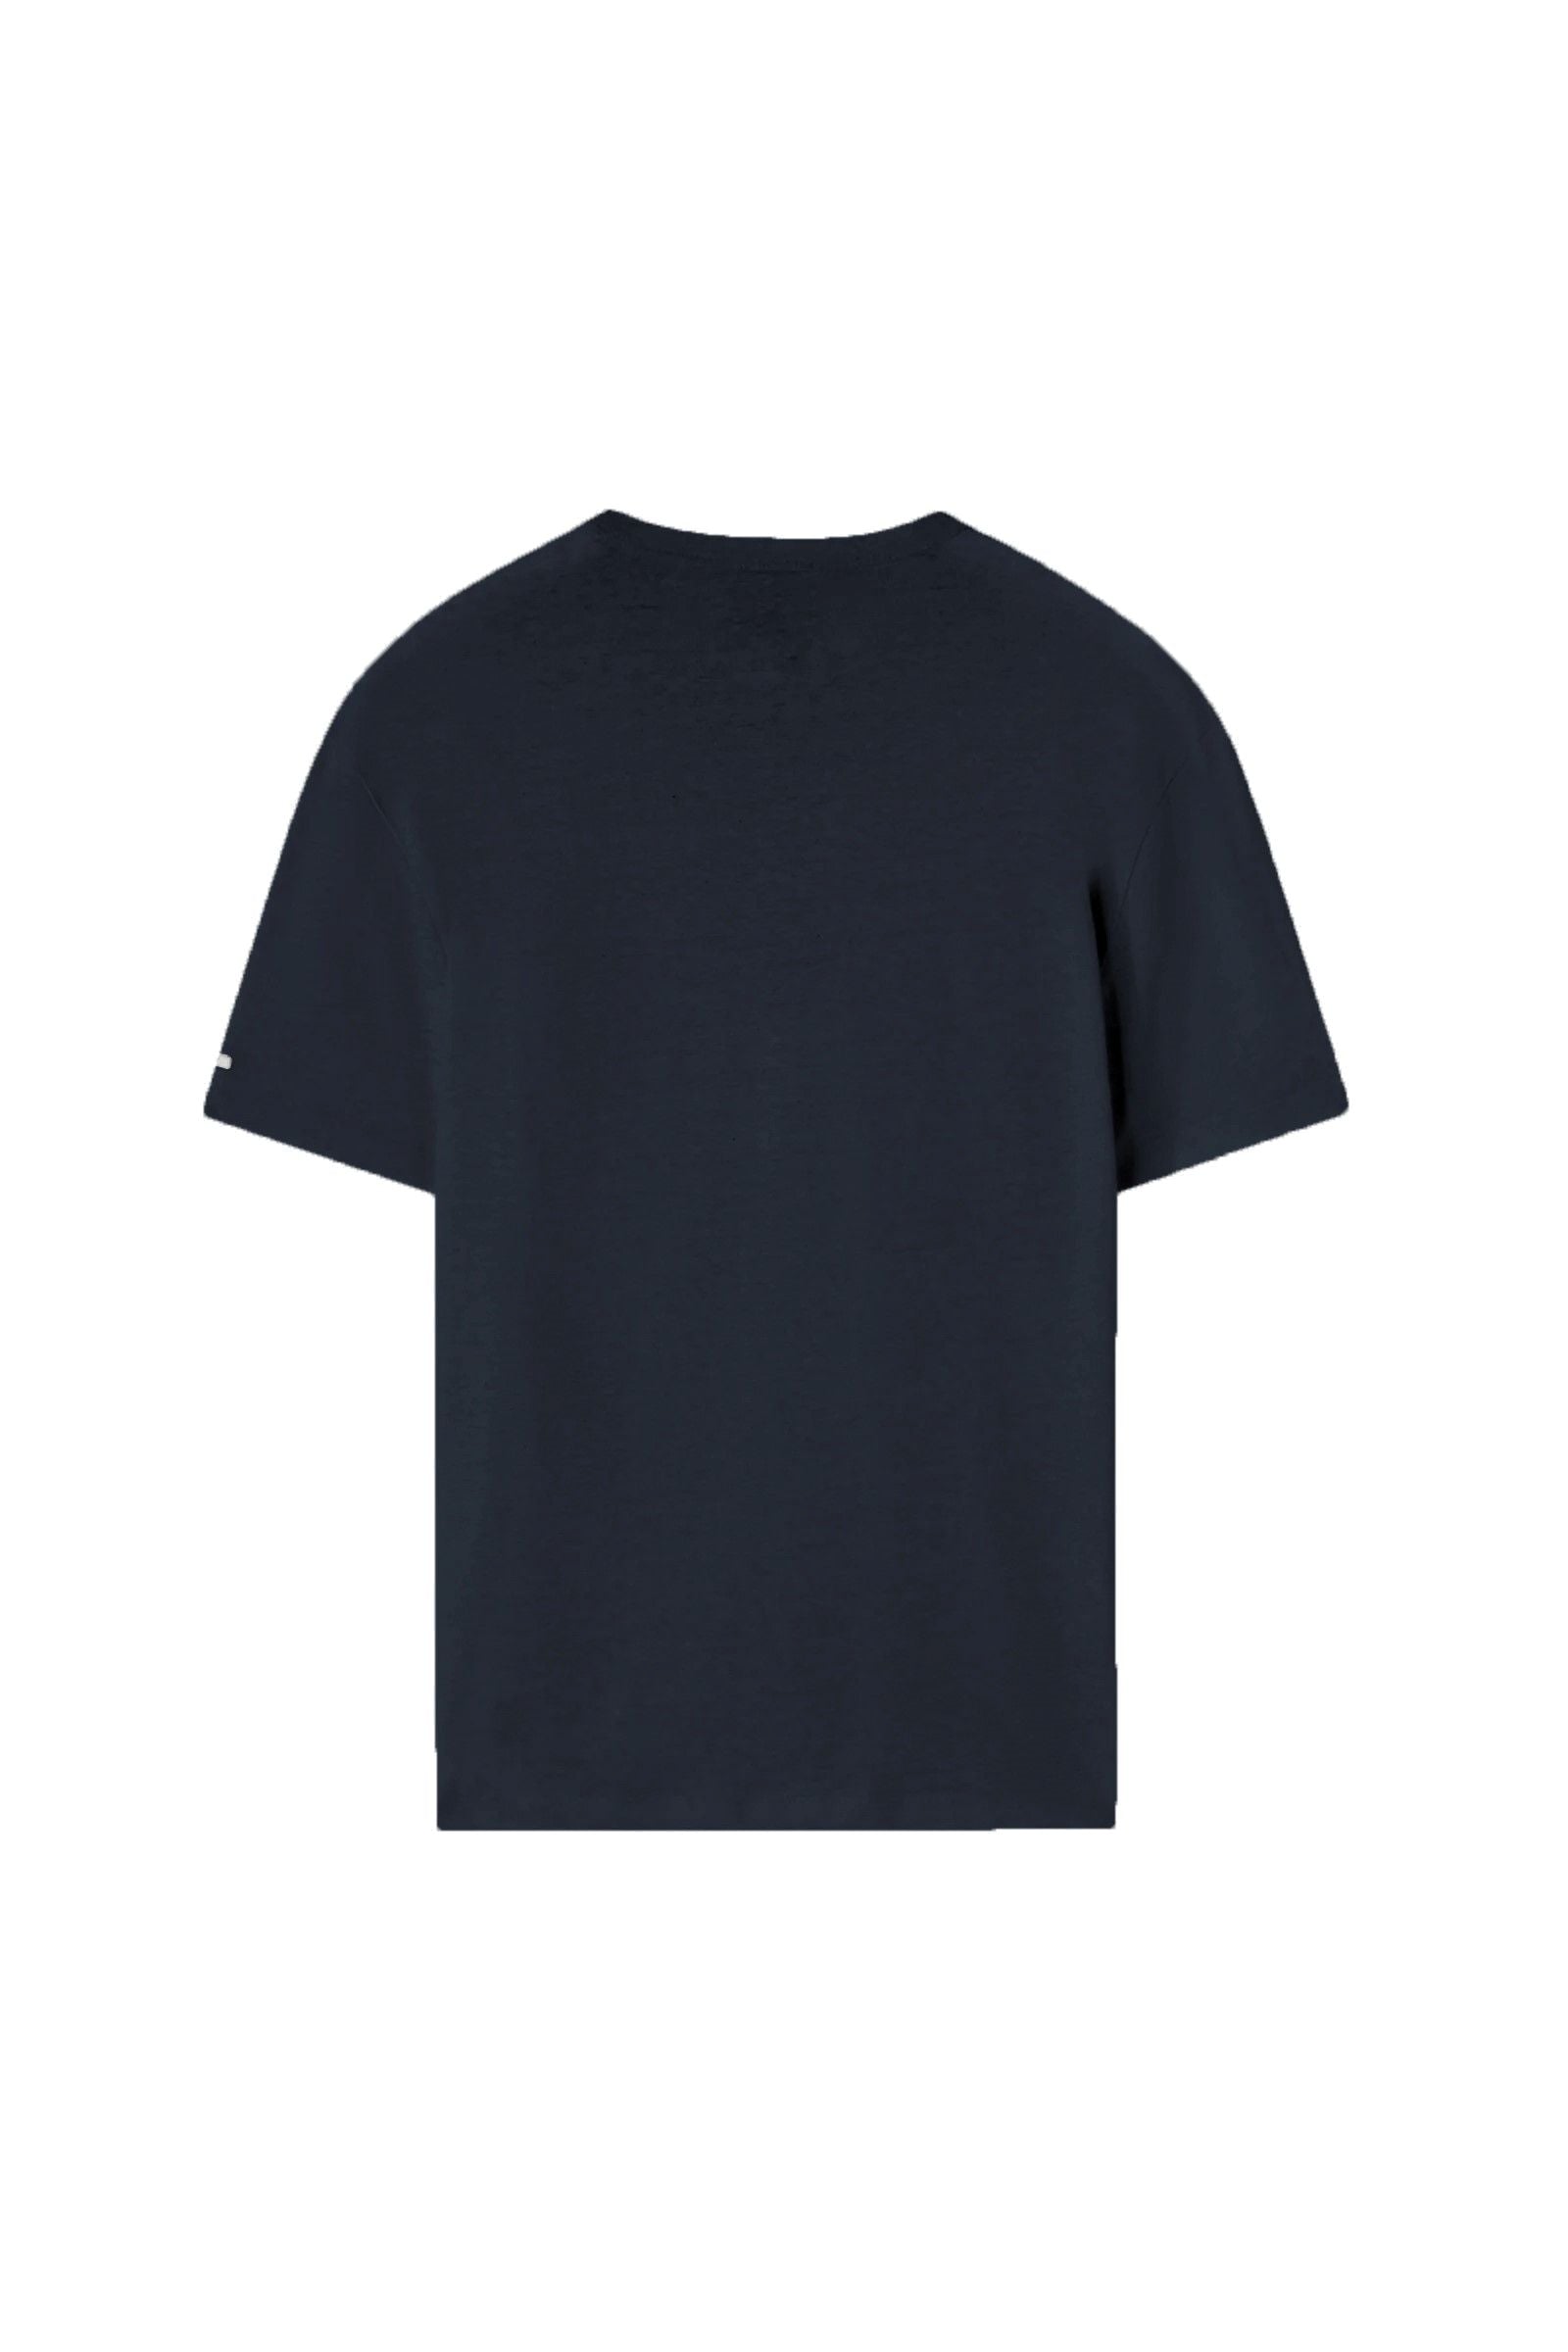 Edgard Ser T-Shirt in Navy Blue